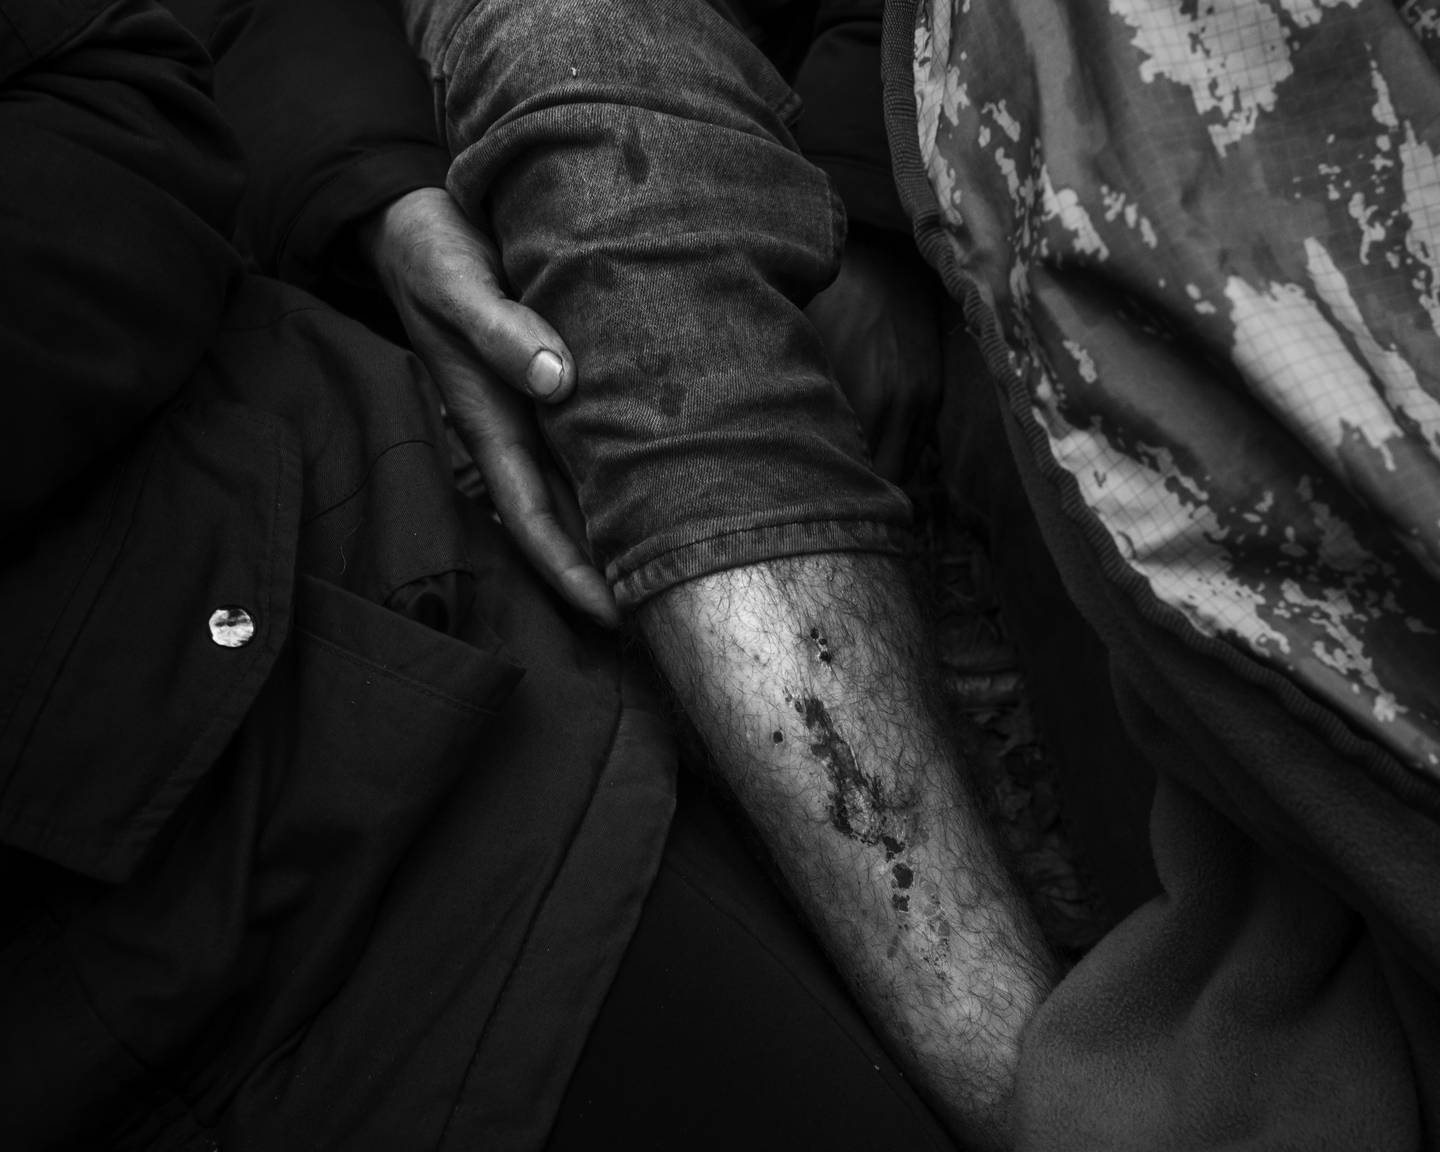 En kurdisk familie. Flere mangler sko, og sitter på bakken i kulda. En fem år gammel jente har epilepsi. 

En av dem har blitt slått av politi og bitt av hunder på hviterussisk side.